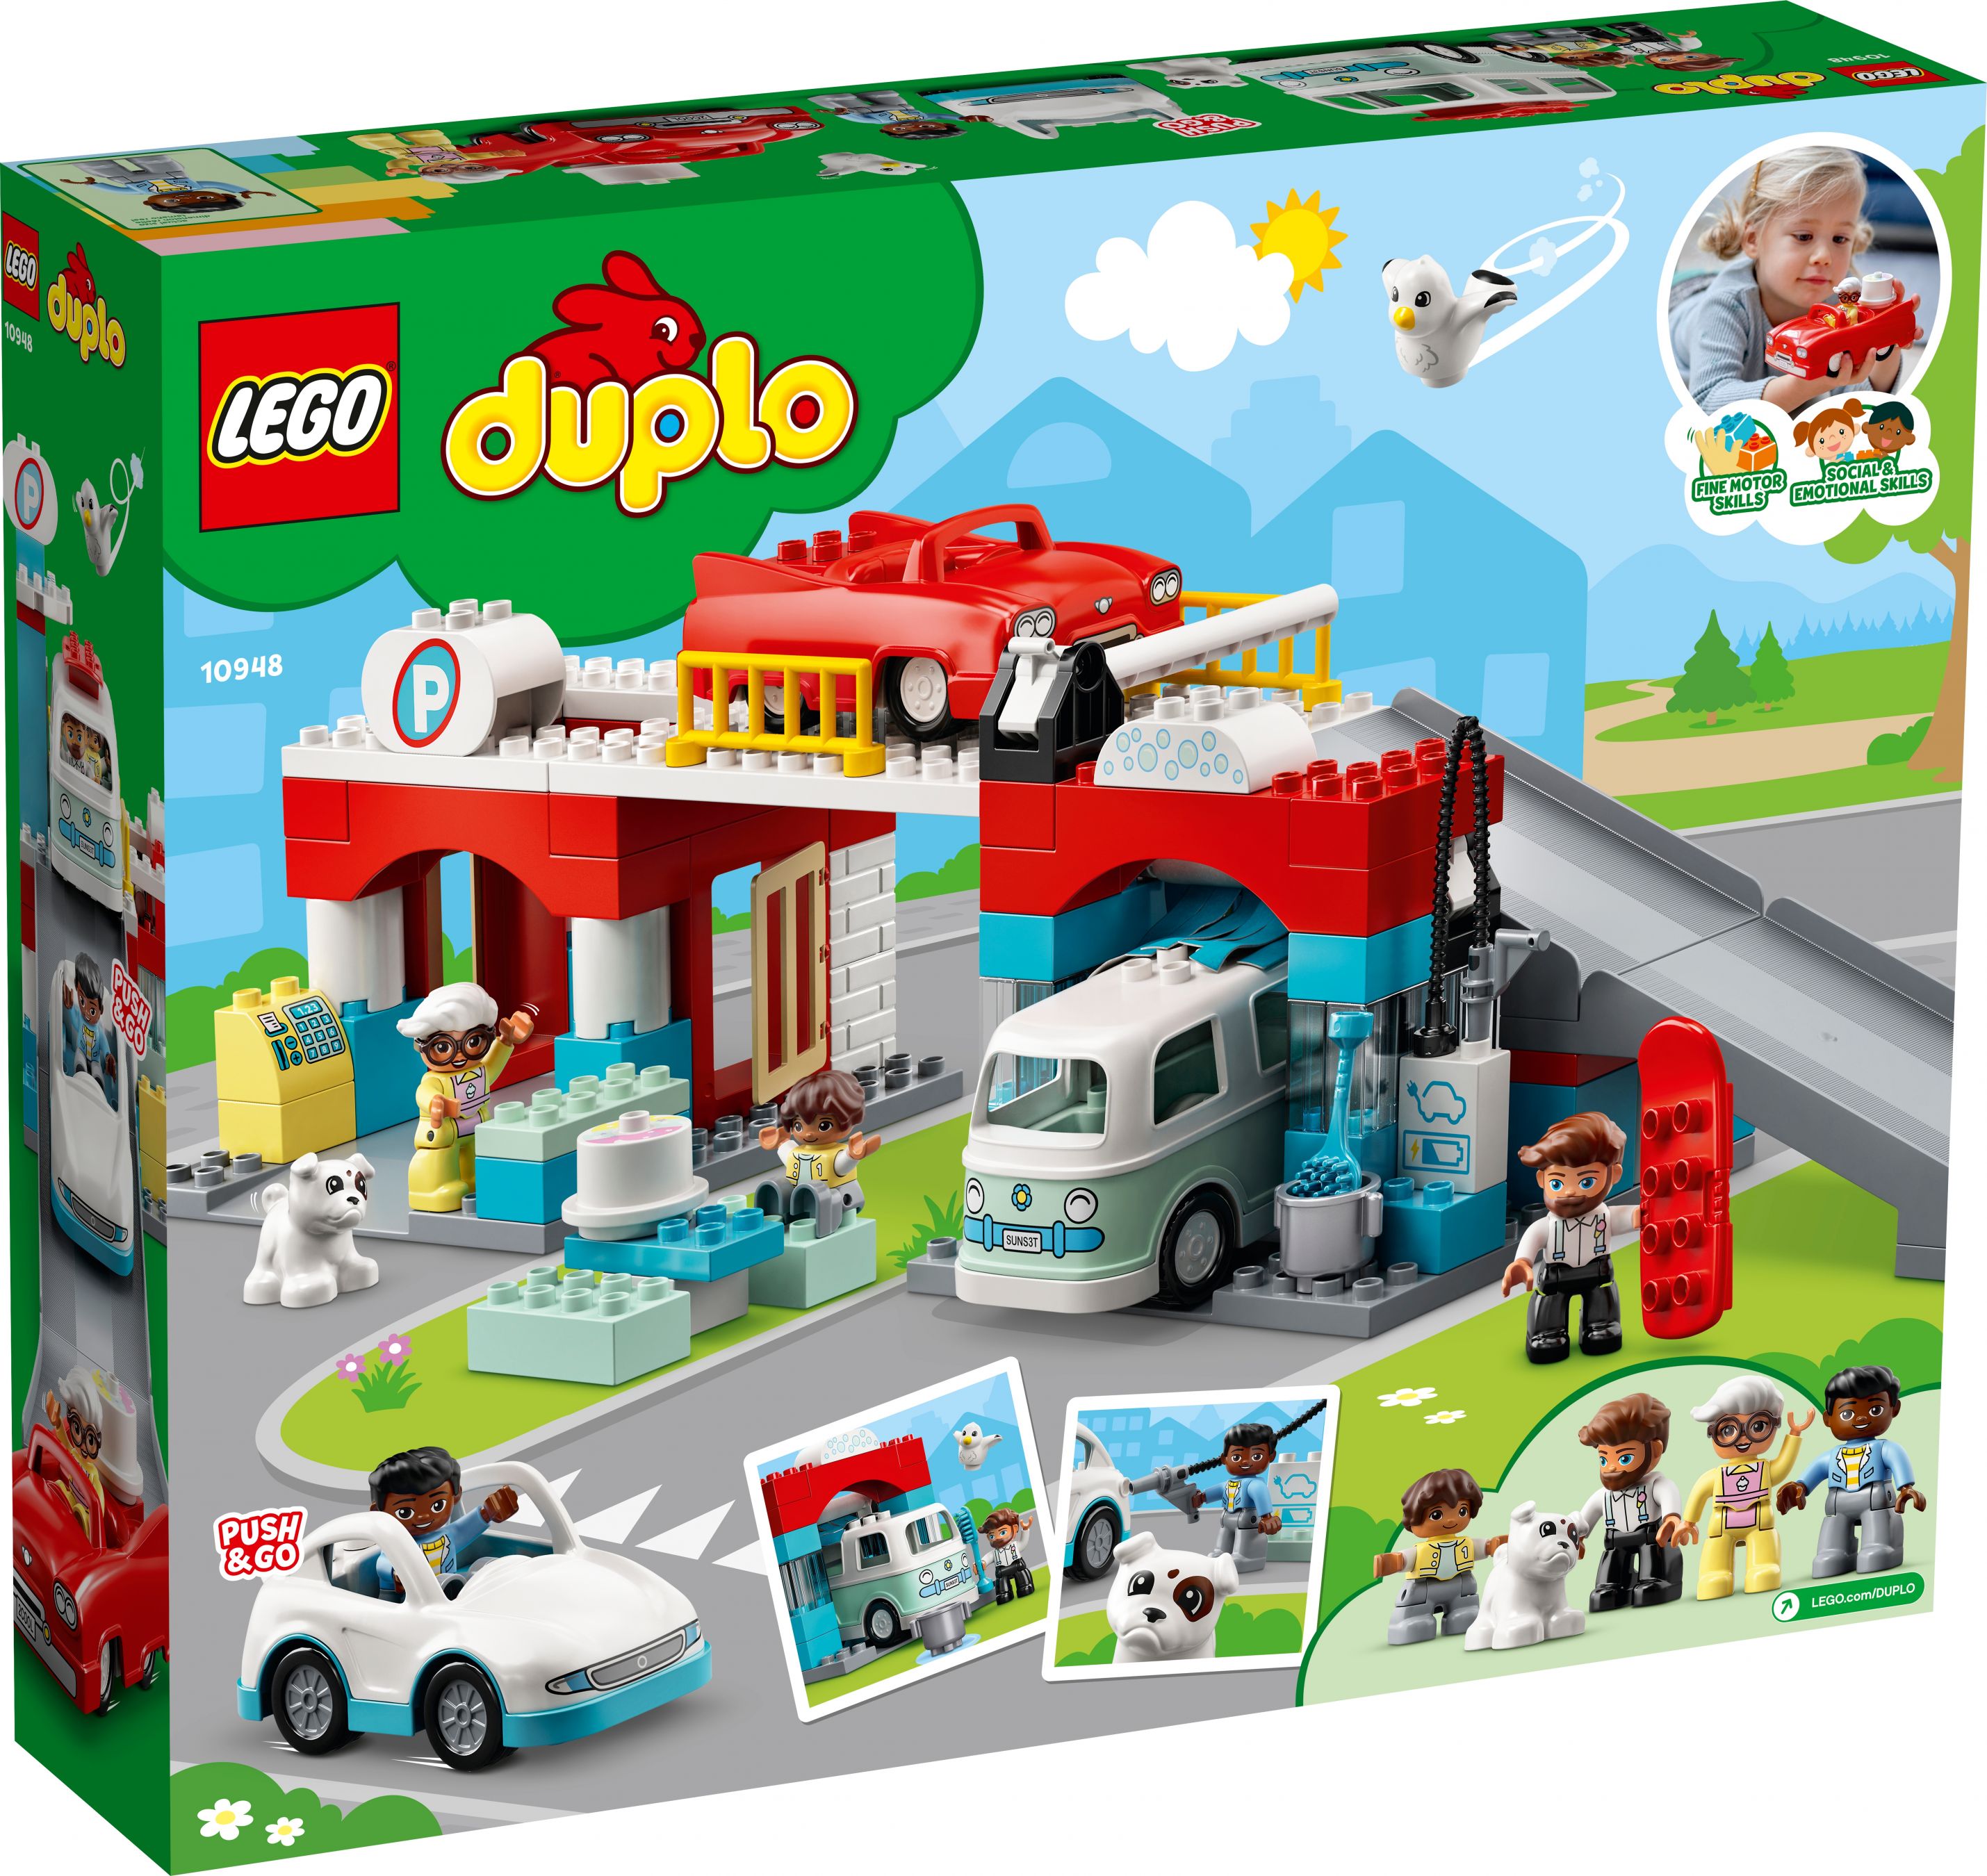 LEGO Duplo 10948 Parkhaus mit Autowaschanlage LEGO_10948_box5_v39.jpg